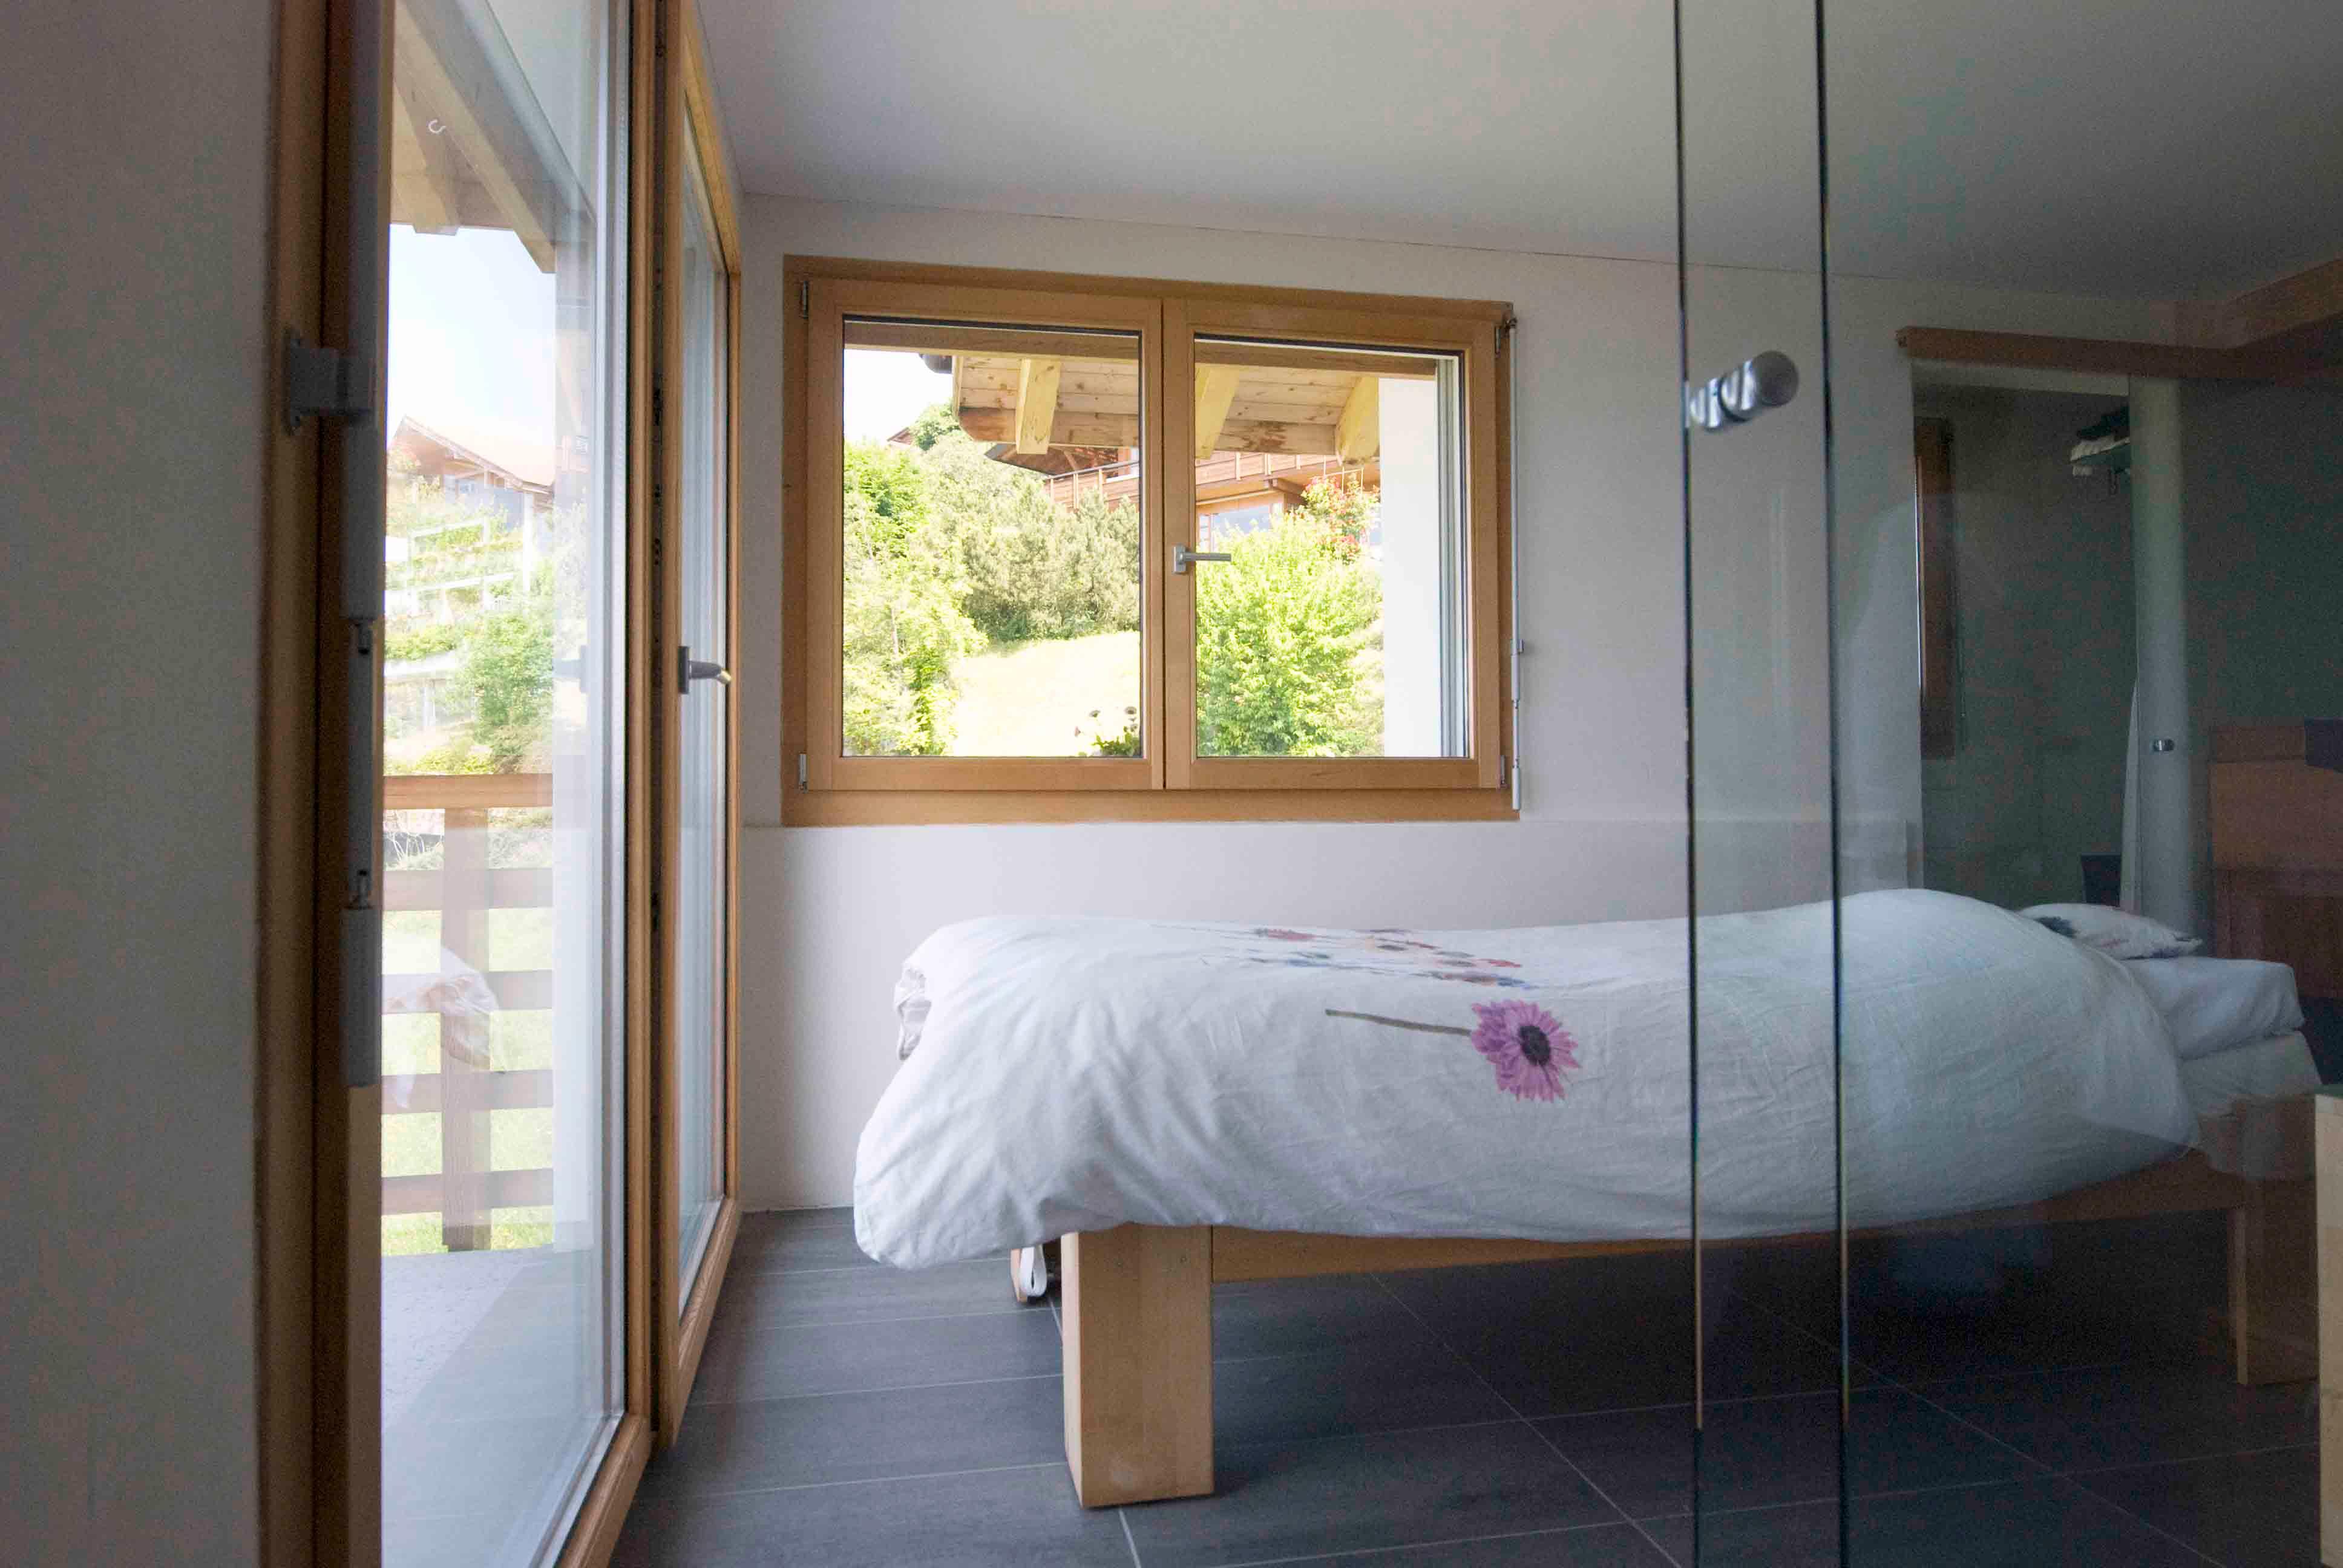 Architektur-Reportage Heiligenschwendi Umweltkranke: Schlafzimmer mit zwei Holzfenstern